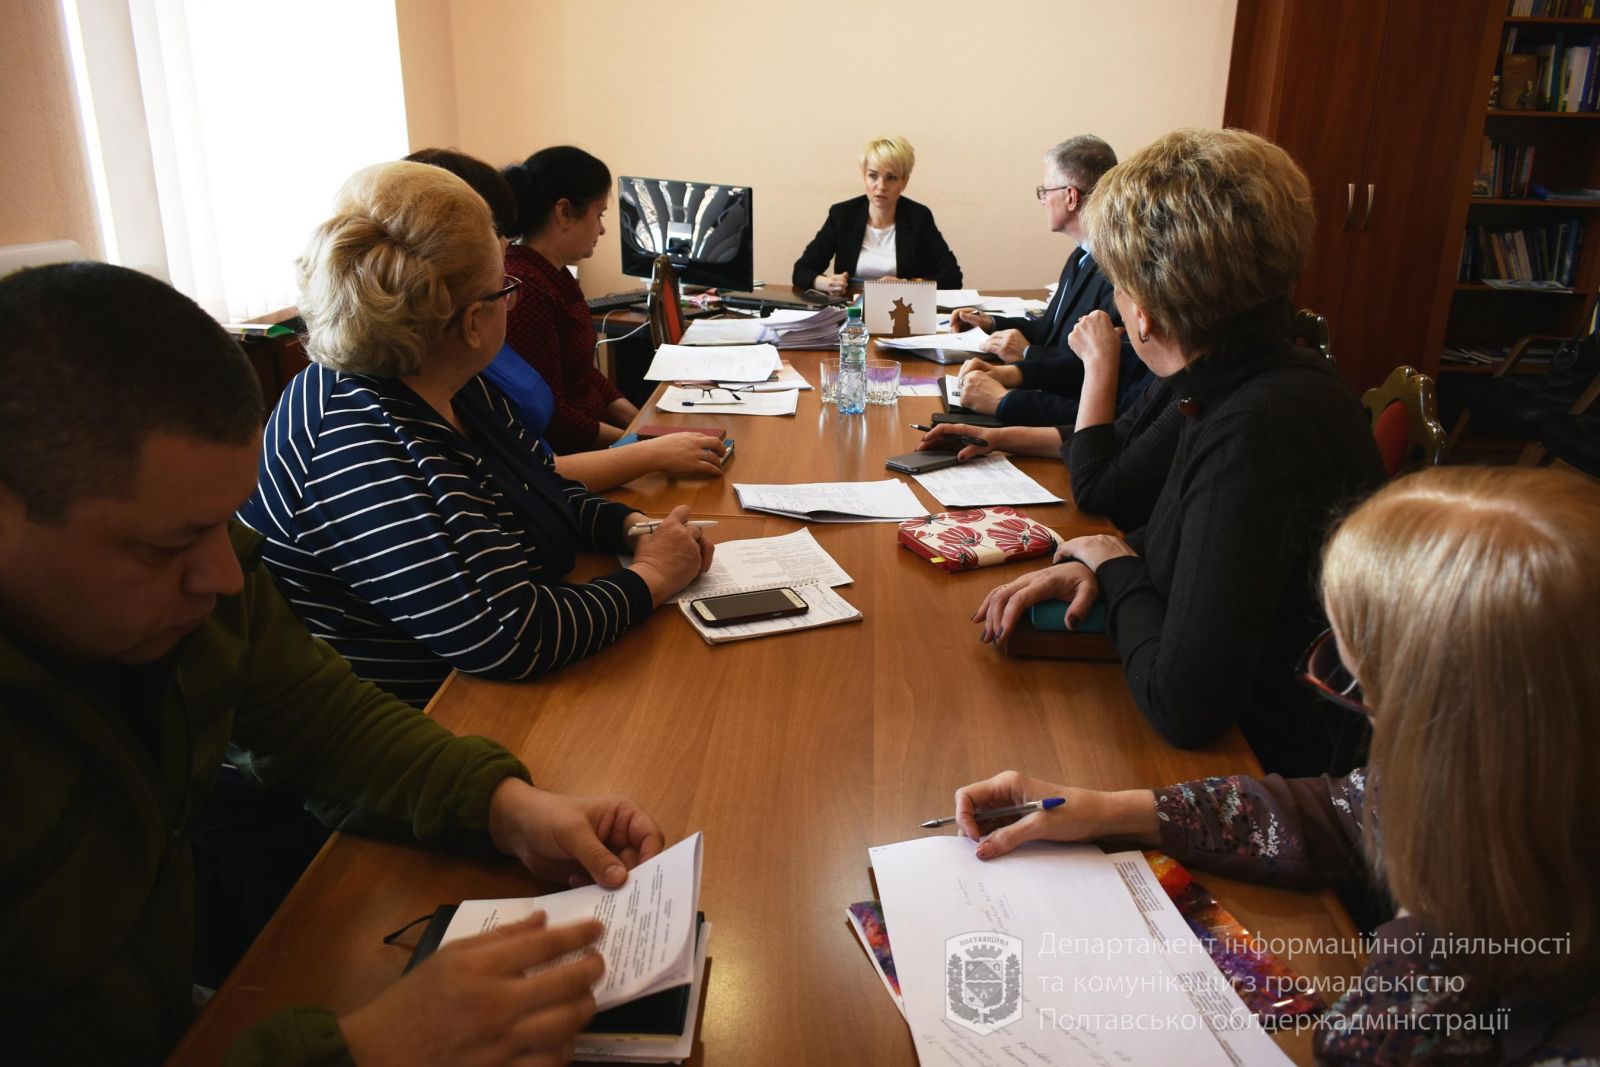 Как в области будут отмечать День украинского добровольца, обсудили на совещании в ОГА